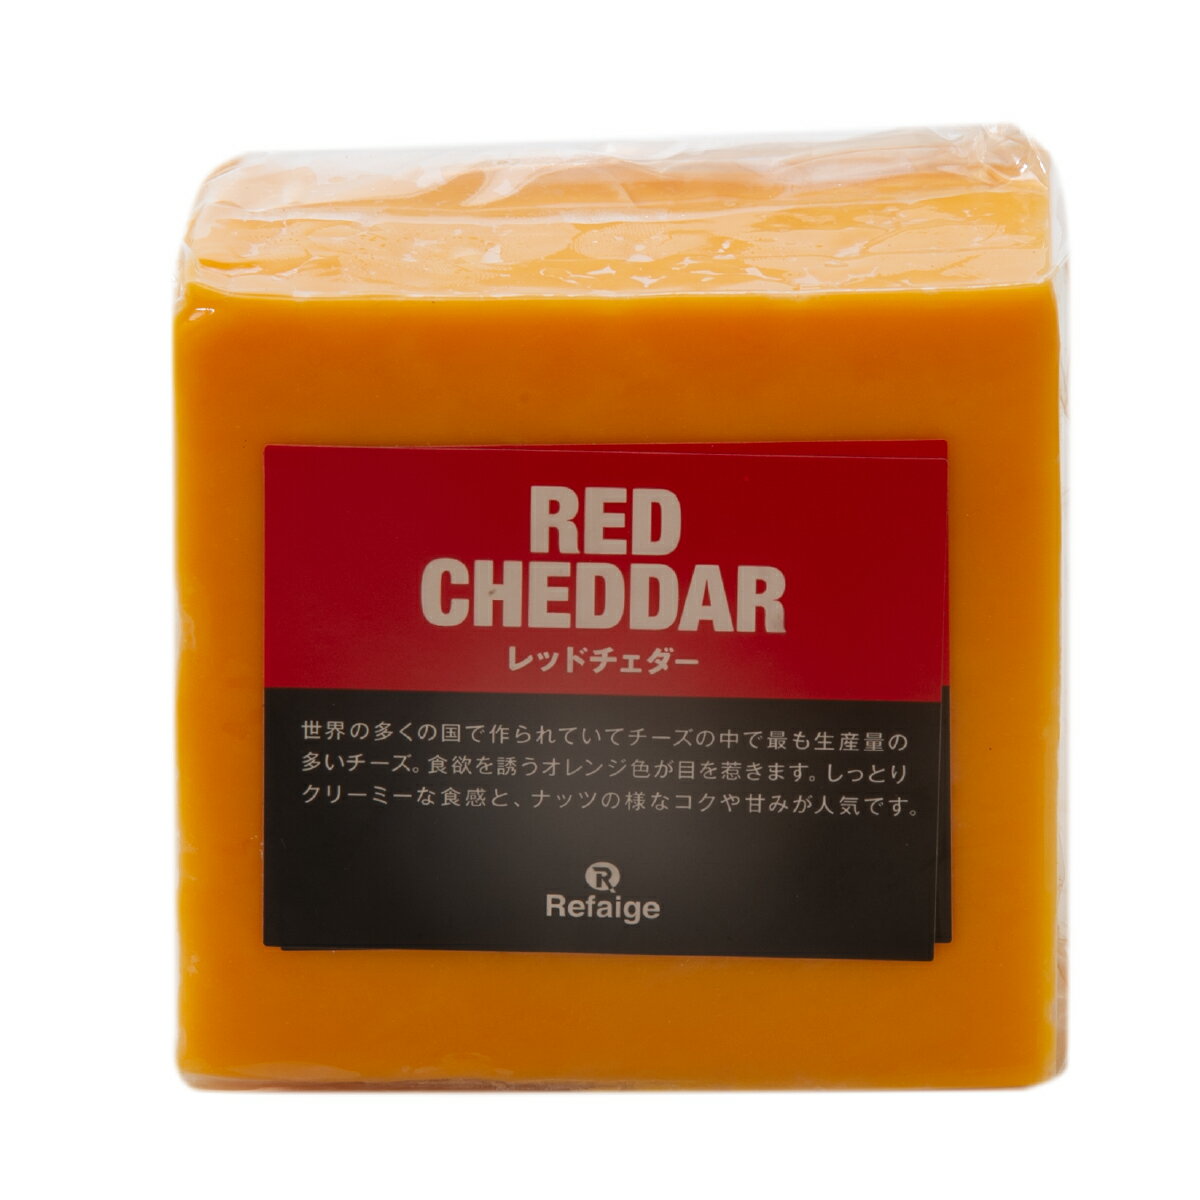 レッドチェダー チェダーチーズはイギリスを代表するチーズですが、現在では世界中の多くの国で作られております。チーズの中で最も生産量の多いタイプになります。牛乳を原料とするセミハードタイプのチーズ。レッドチェダーチーズはチェダーチーズを植物性着色料アナトー色素で色付けしたオレンジ色が特徴です。クセの強い香りは無く、チーズ初心者にも食べやすいチーズです。さっぱりした酸味とねっとりとした食感が特徴です。 ＜鮮やかなオレンジ色が食卓を彩ります＞ そのままはもちろんですが、細かく切ってサラダのトッピングや食パンにのせて焼いてもグッドです。 種類別 ナチュラルチーズ 原材料名 生乳、食塩／アナトー色素 原産国 アメリカ 内容量 約500g タイプ セミハード 加工 カット 料理 鮮やかなオレンジ色を生かしてサラダや肉料理のトッピング、スライスしてトーストへ 合うお酒 赤ワイン・ビールなど 個性 ★☆☆ 塩味 ★☆☆ 配送 クール便（商品は真空パック） 賞味期限 お届け後40日以上（未開封時） 保存方法 要冷蔵(10℃以下)乾燥が大敵。 密閉容器にいれて冷蔵庫の野菜室で保存がおすすめです。 開封後は賞味期限に関わらずお早めにお召し上がりください。 栄養成分表示 熱量400kcal、たんぱく質25.0g、脂質33.0g、炭水化物2.0g、食塩相当量1.7g＊100gあたり／推定値 製造・販売者 株式会社リフェージュ　／　埼玉県戸田市美女木5-21-7 ＜仕入・製造・検査・出荷まで自社工場一貫体制にて行っております。＞ 不定貫について 1kgあたり税込2,376円にて再計算(減額)させていただきます。